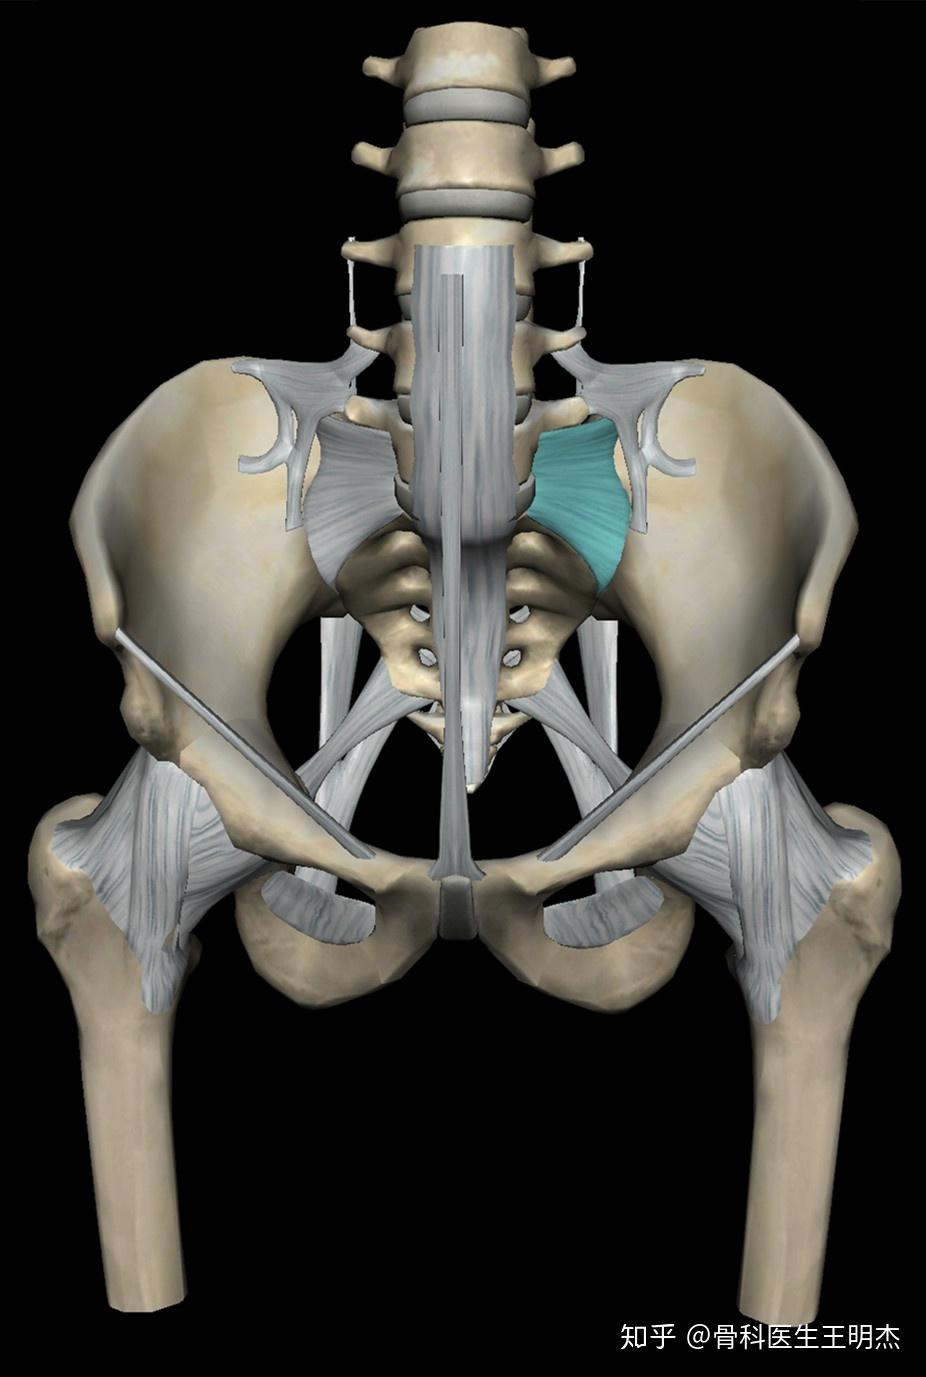 骨盆骨性结构:骨盆是人体承上启下的部位也是身体重心所在, 上接脊柱